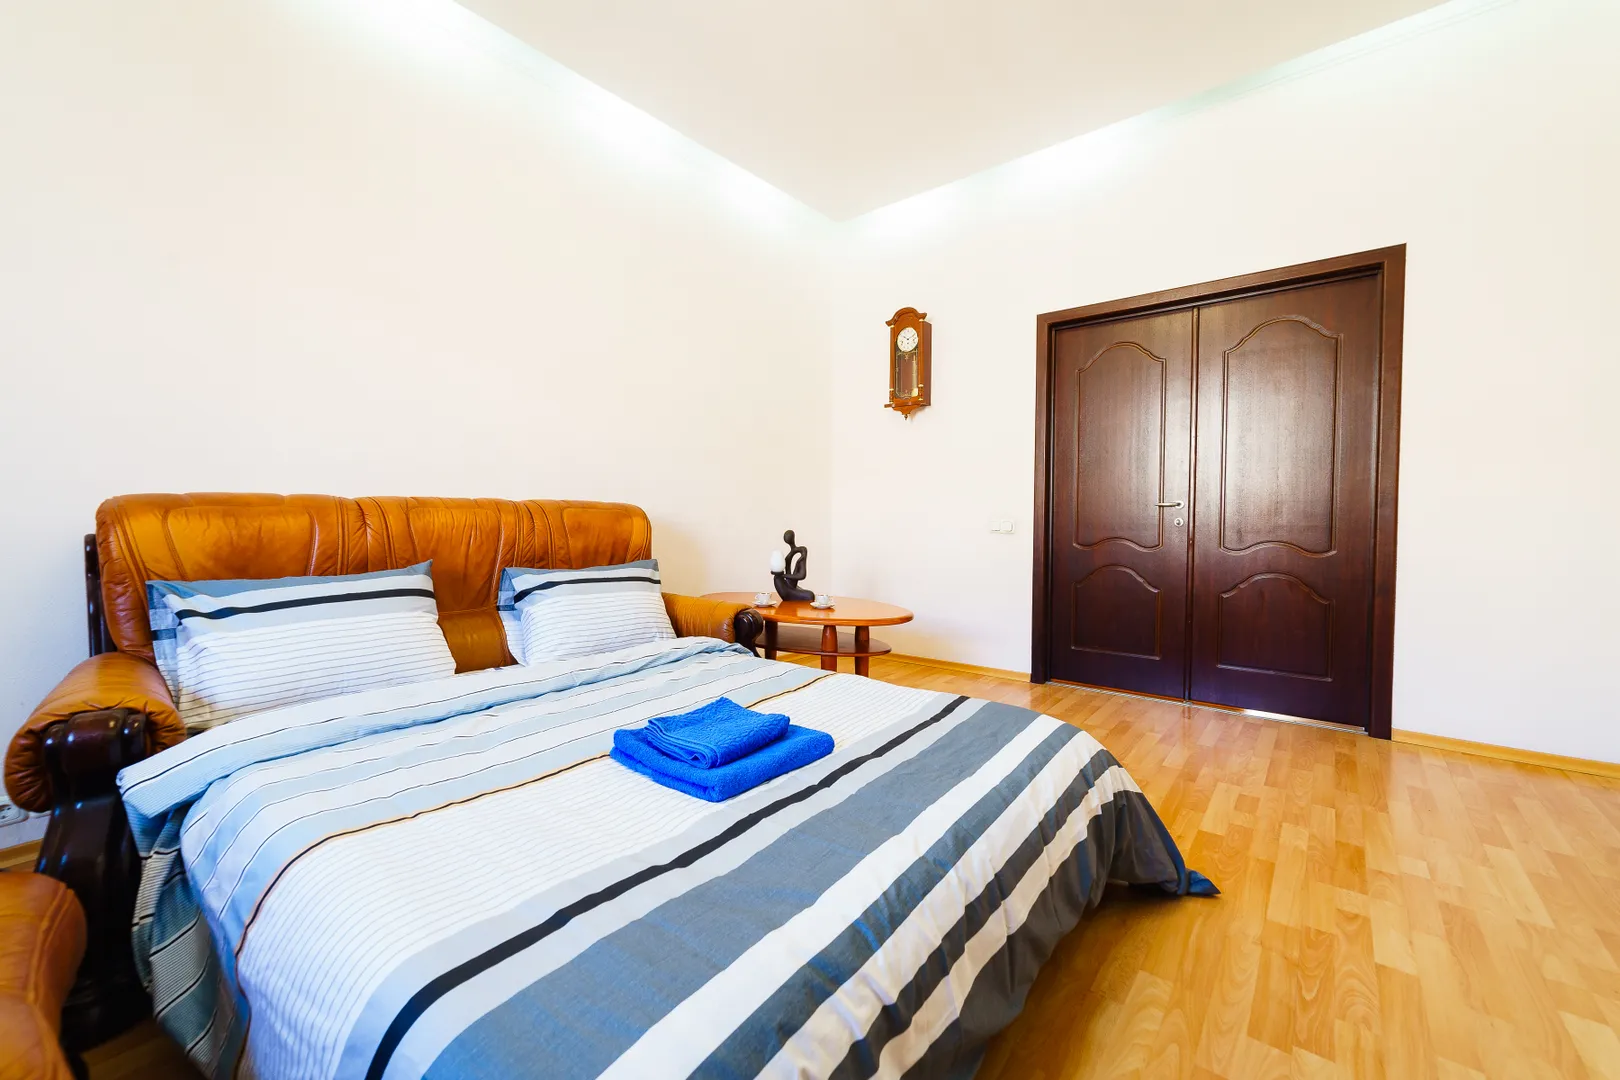 Просторный диван в гостиной легко трансформируется в двуспальную кровать